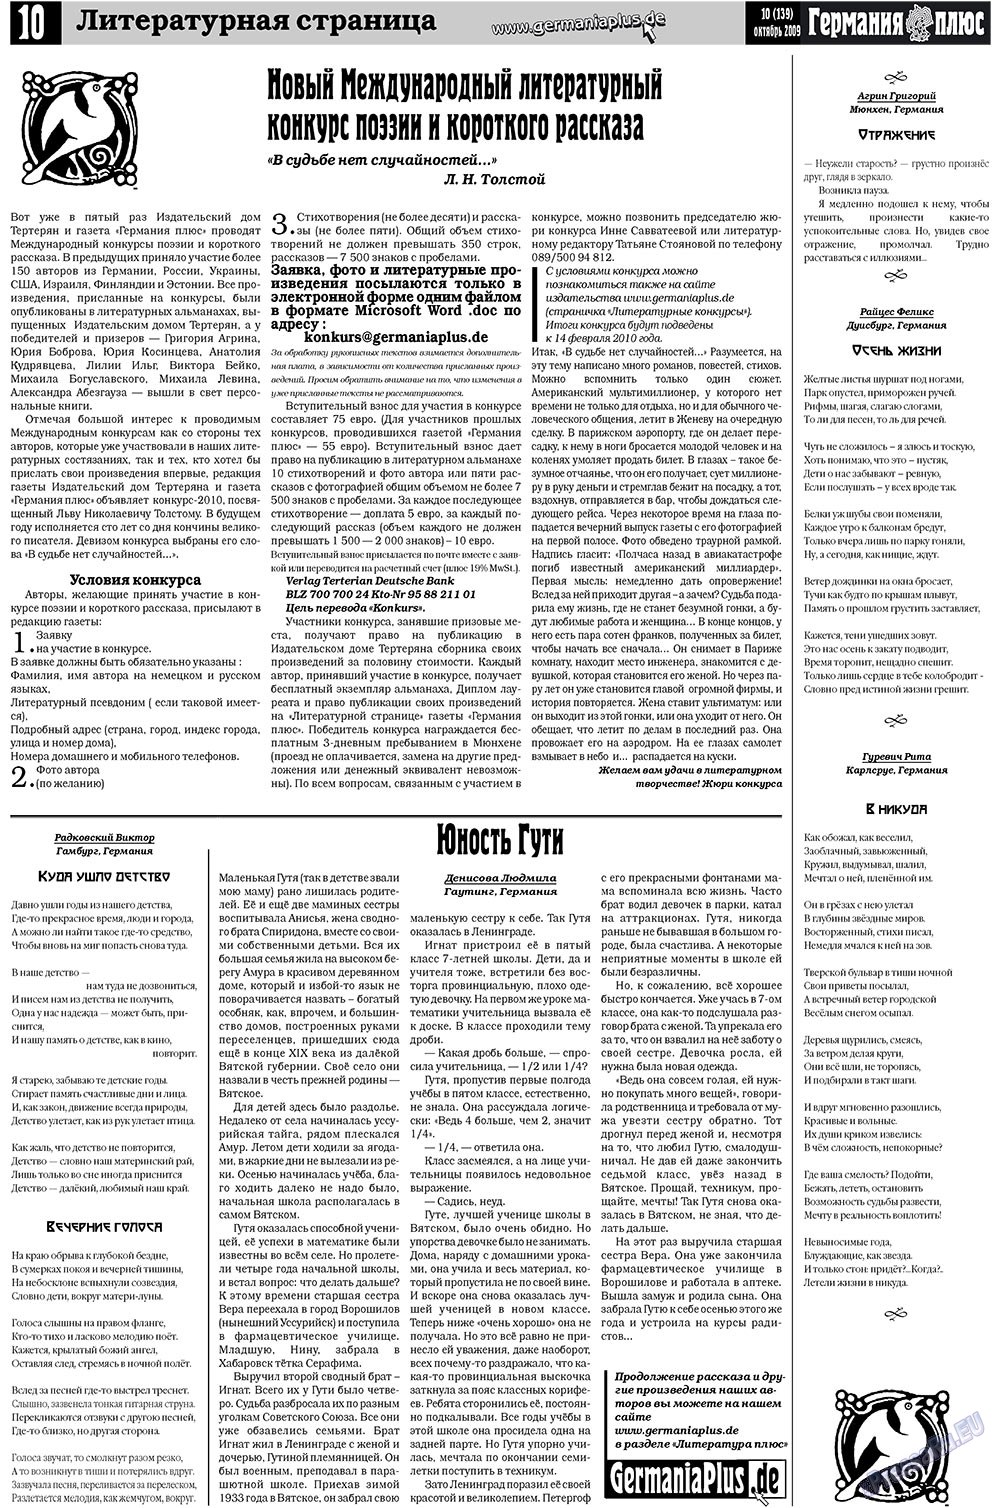 Германия плюс, газета. 2009 №10 стр.10